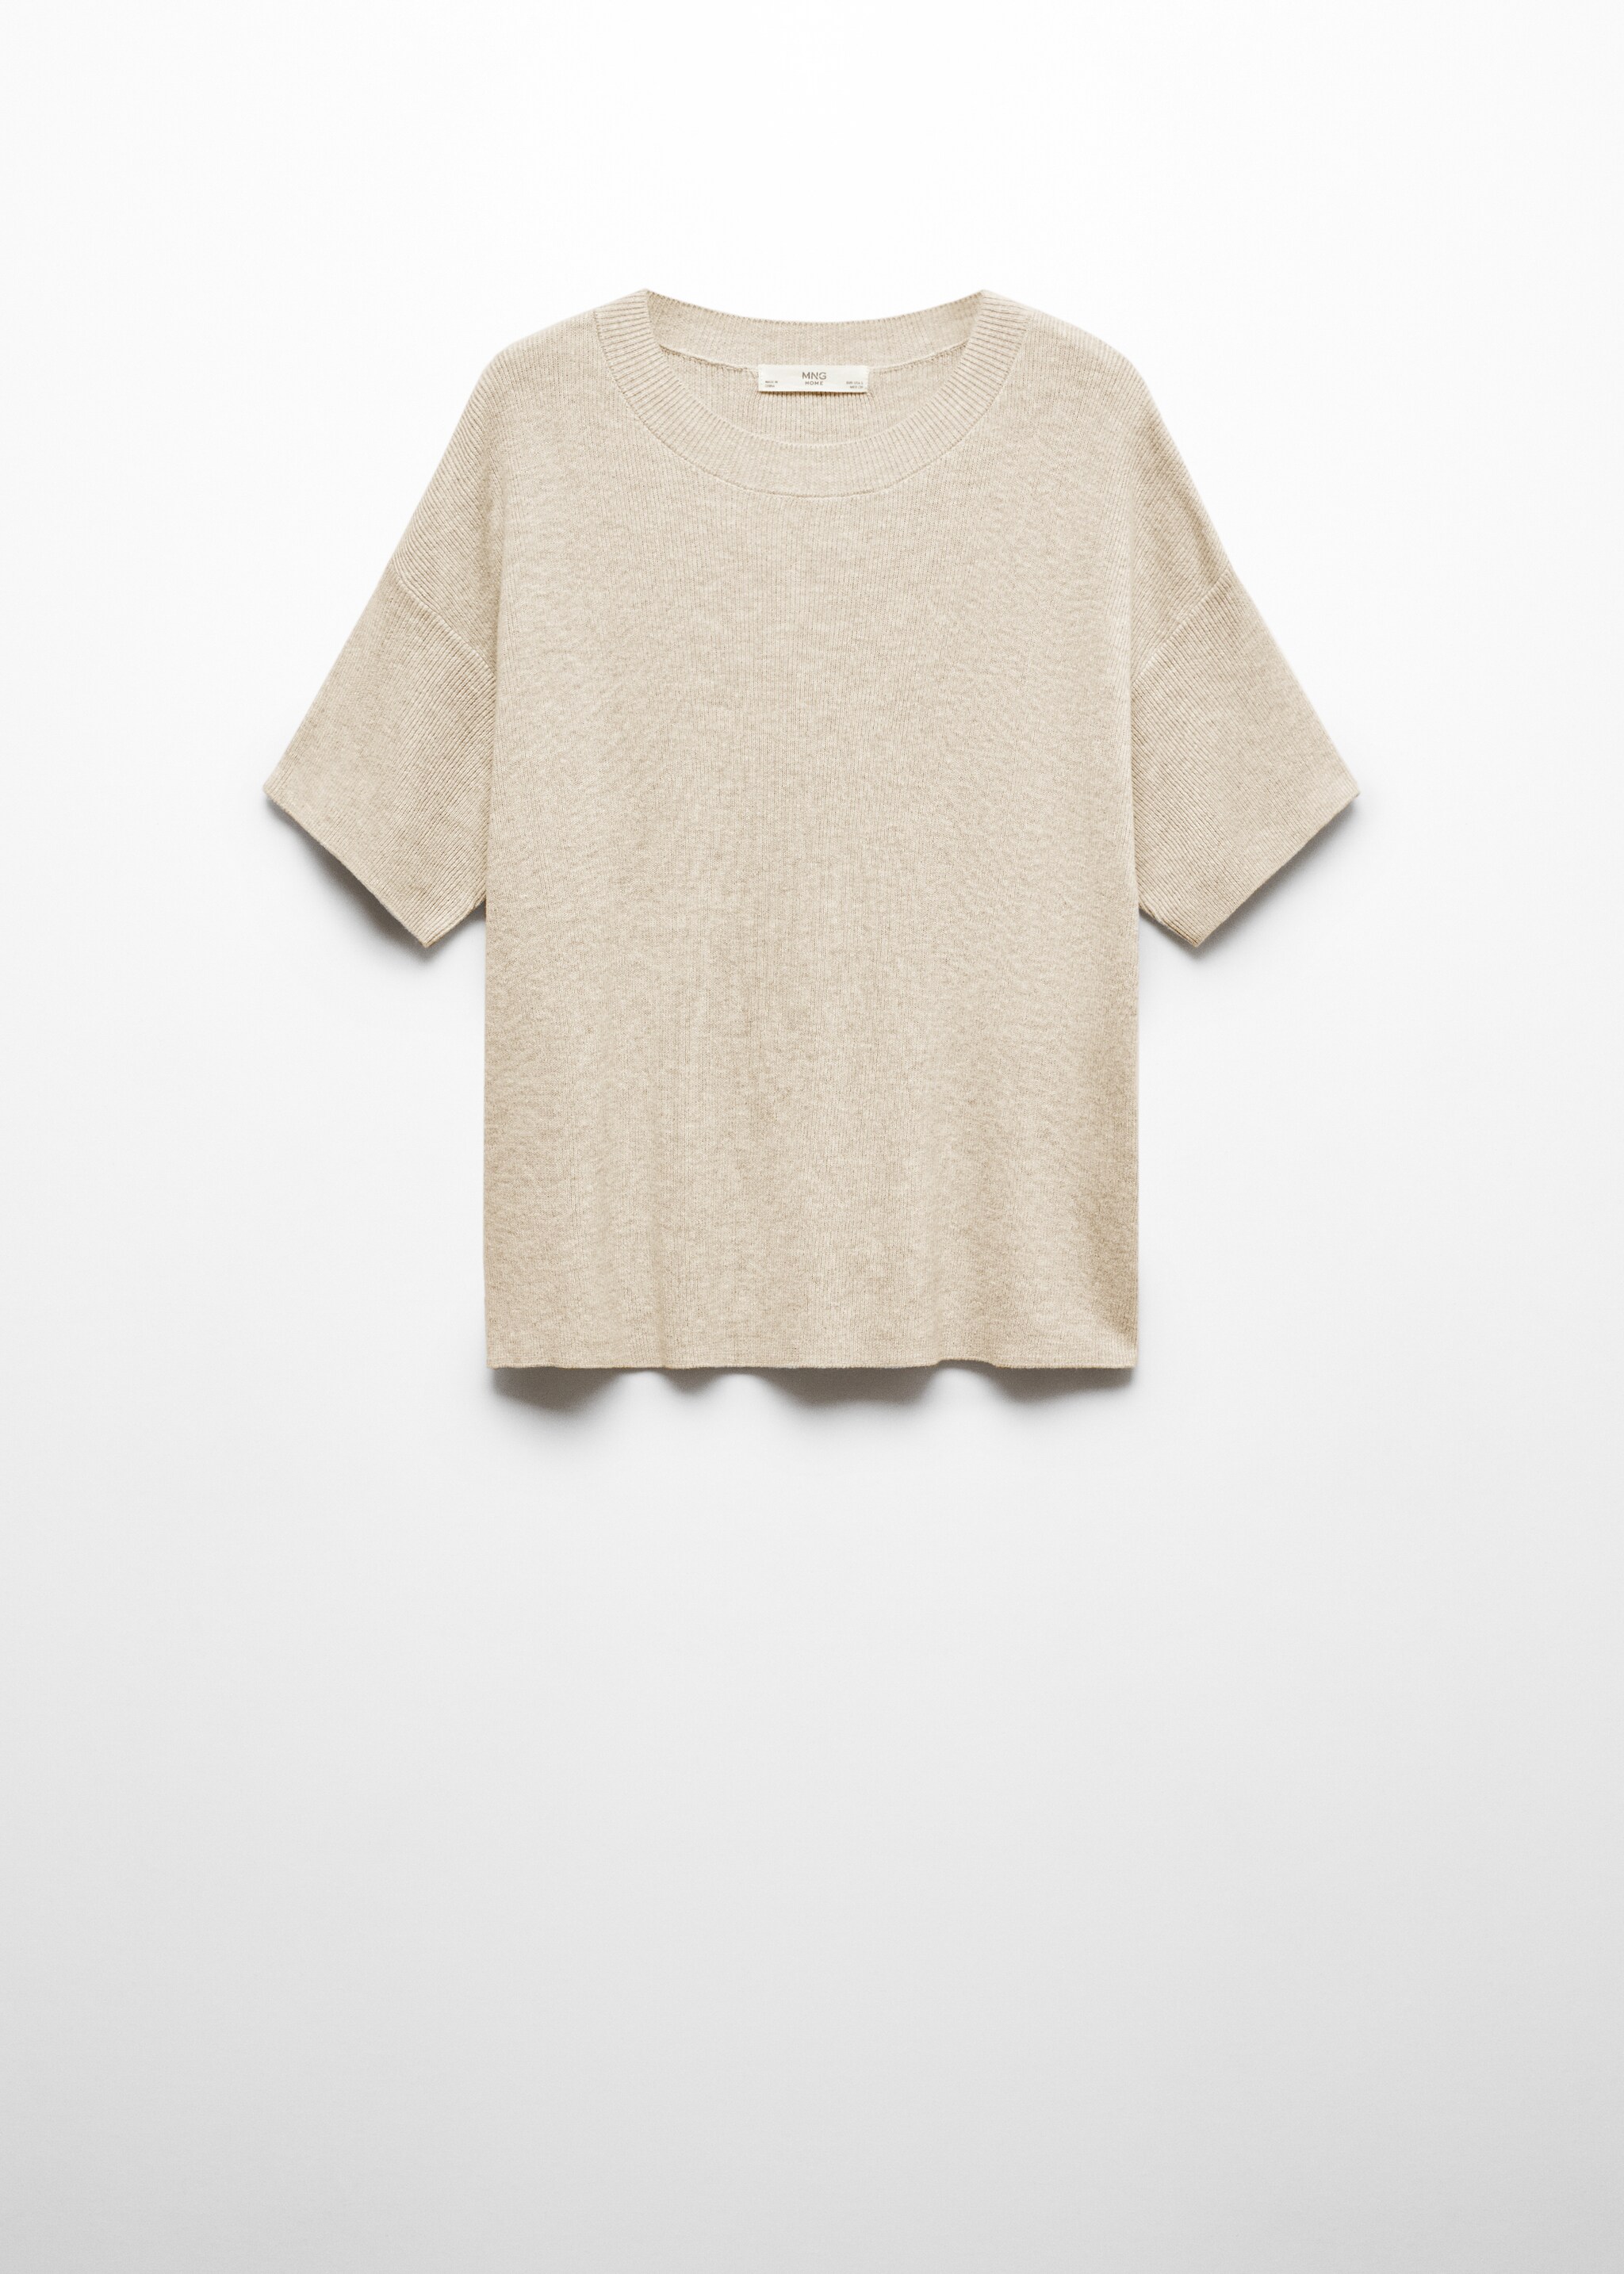 Cotton linen-blend knit t-shirt - Article without model